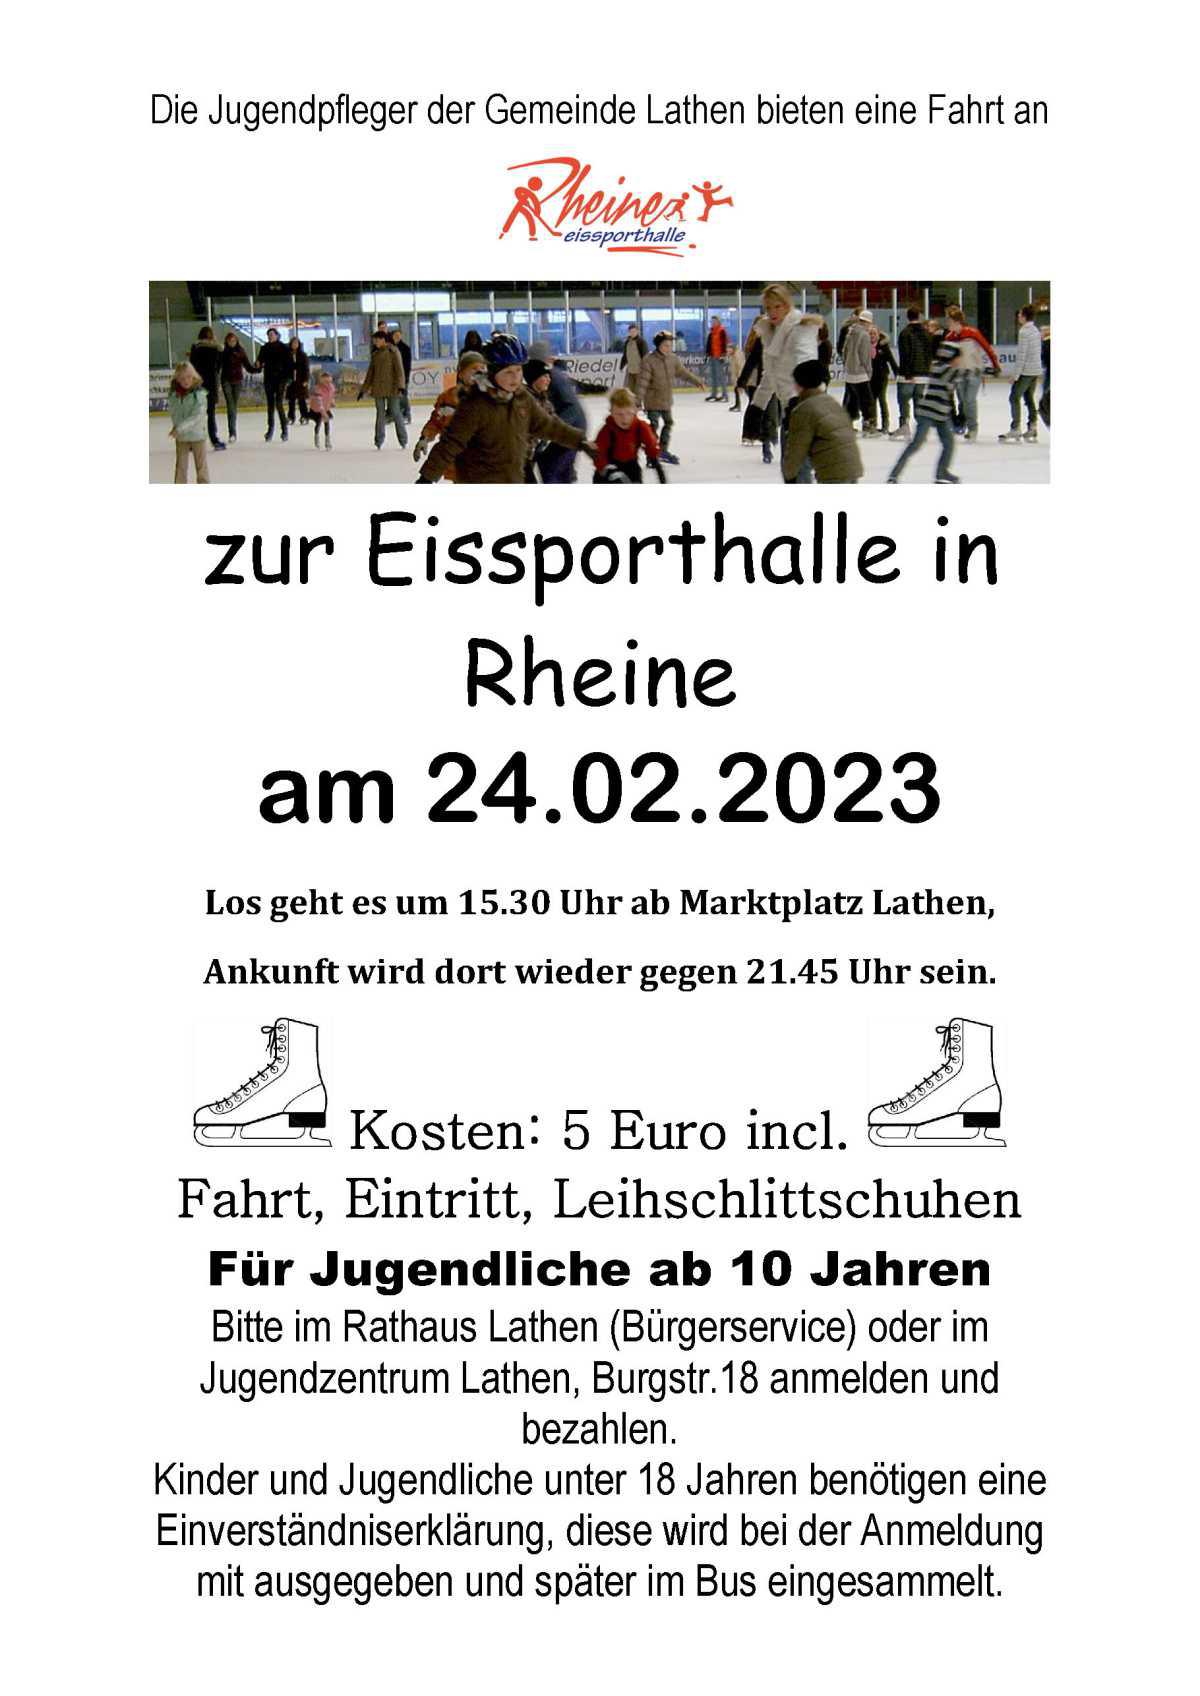 ACHTUNG: JETZT NOCH SCHNELL ANMELDEN!!!Mit den Jugendpflegern der Gemeinde Lathen zur Eissporthalle nach Rheine